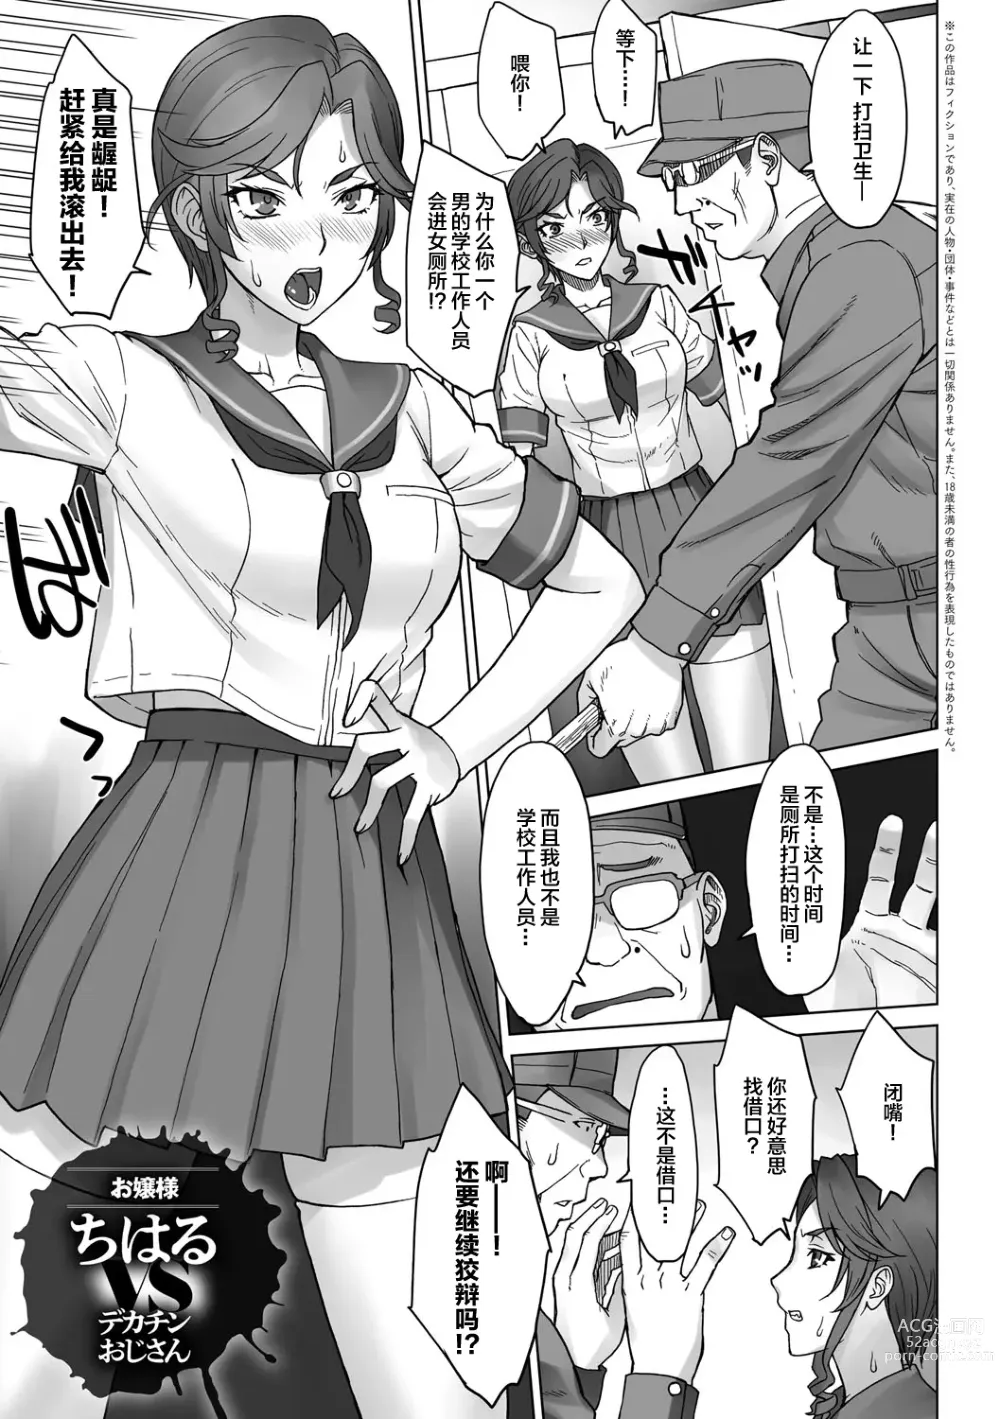 Page 1 of doujinshi Ojou-sama Chiharu VS Dekachin Oji-san + Dekachin Oji-san after